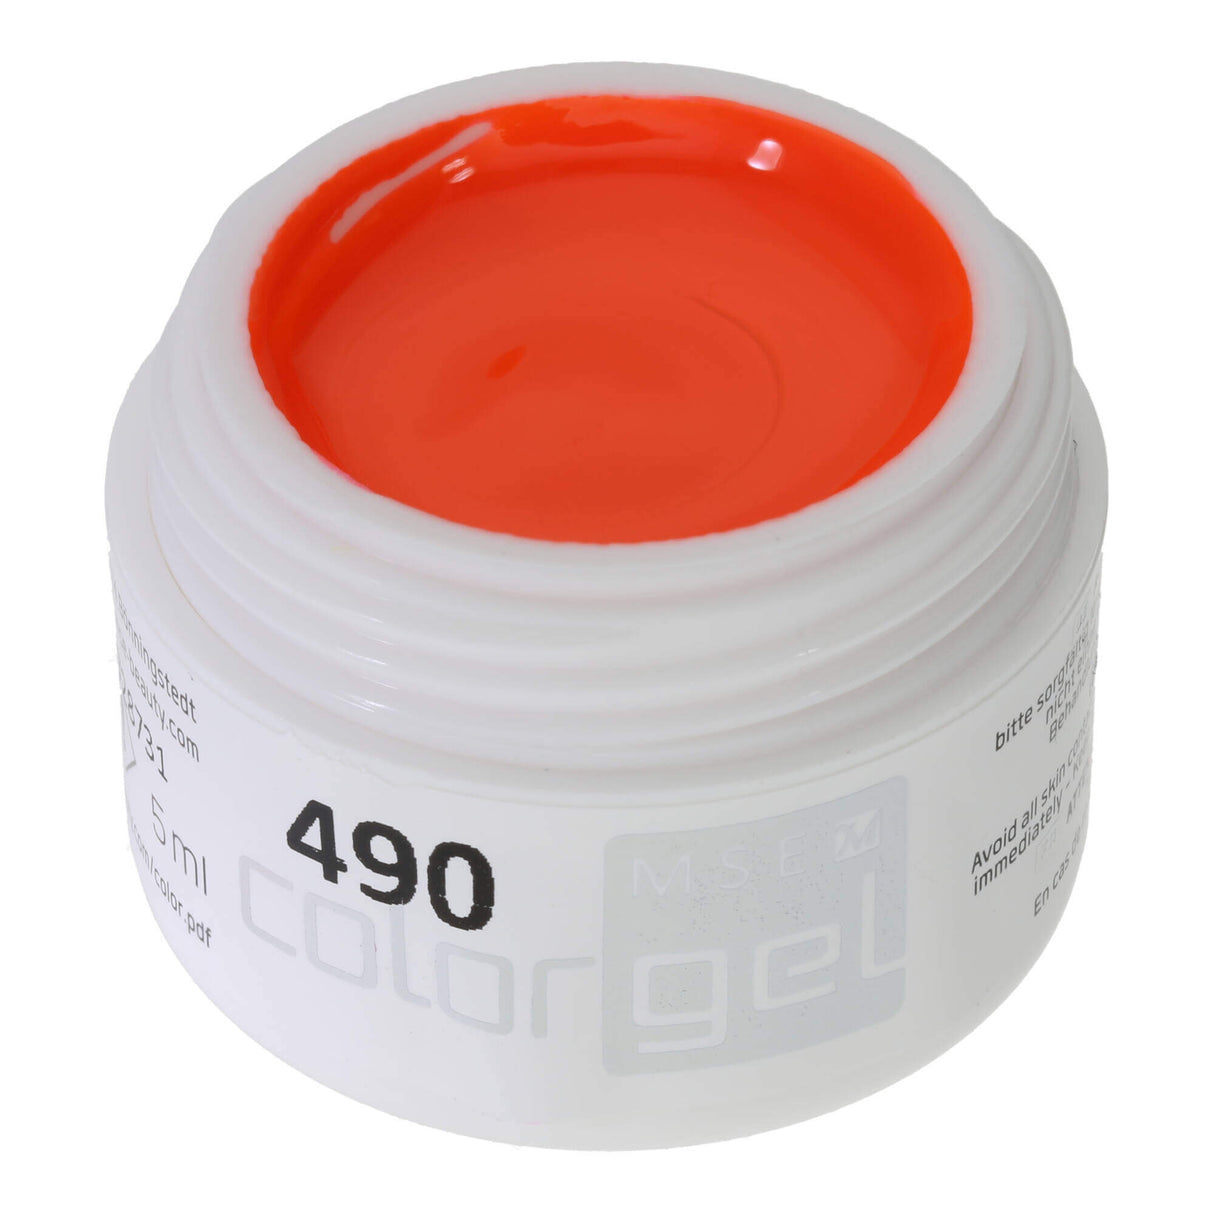 # 490 Premium-PURE Color Gel 5ml neon orange